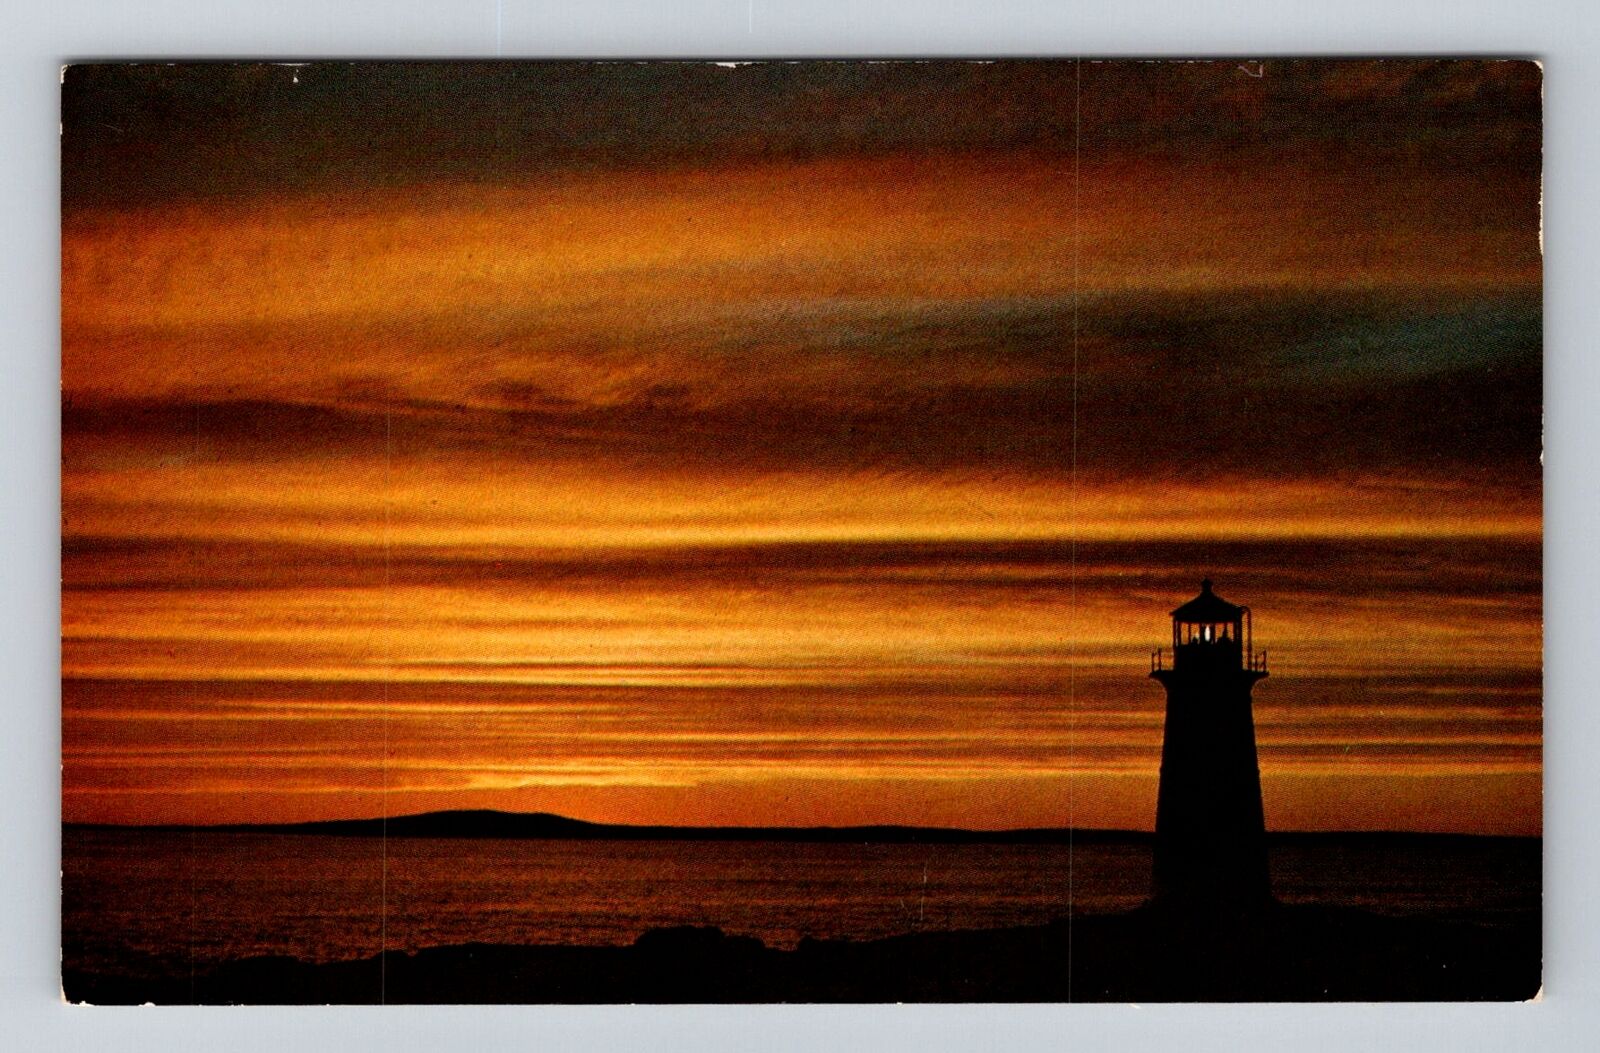 Peggy\'s Cove Nova Scotia-Canada, Peggy\'s Cove Light House, Vintage Postcard